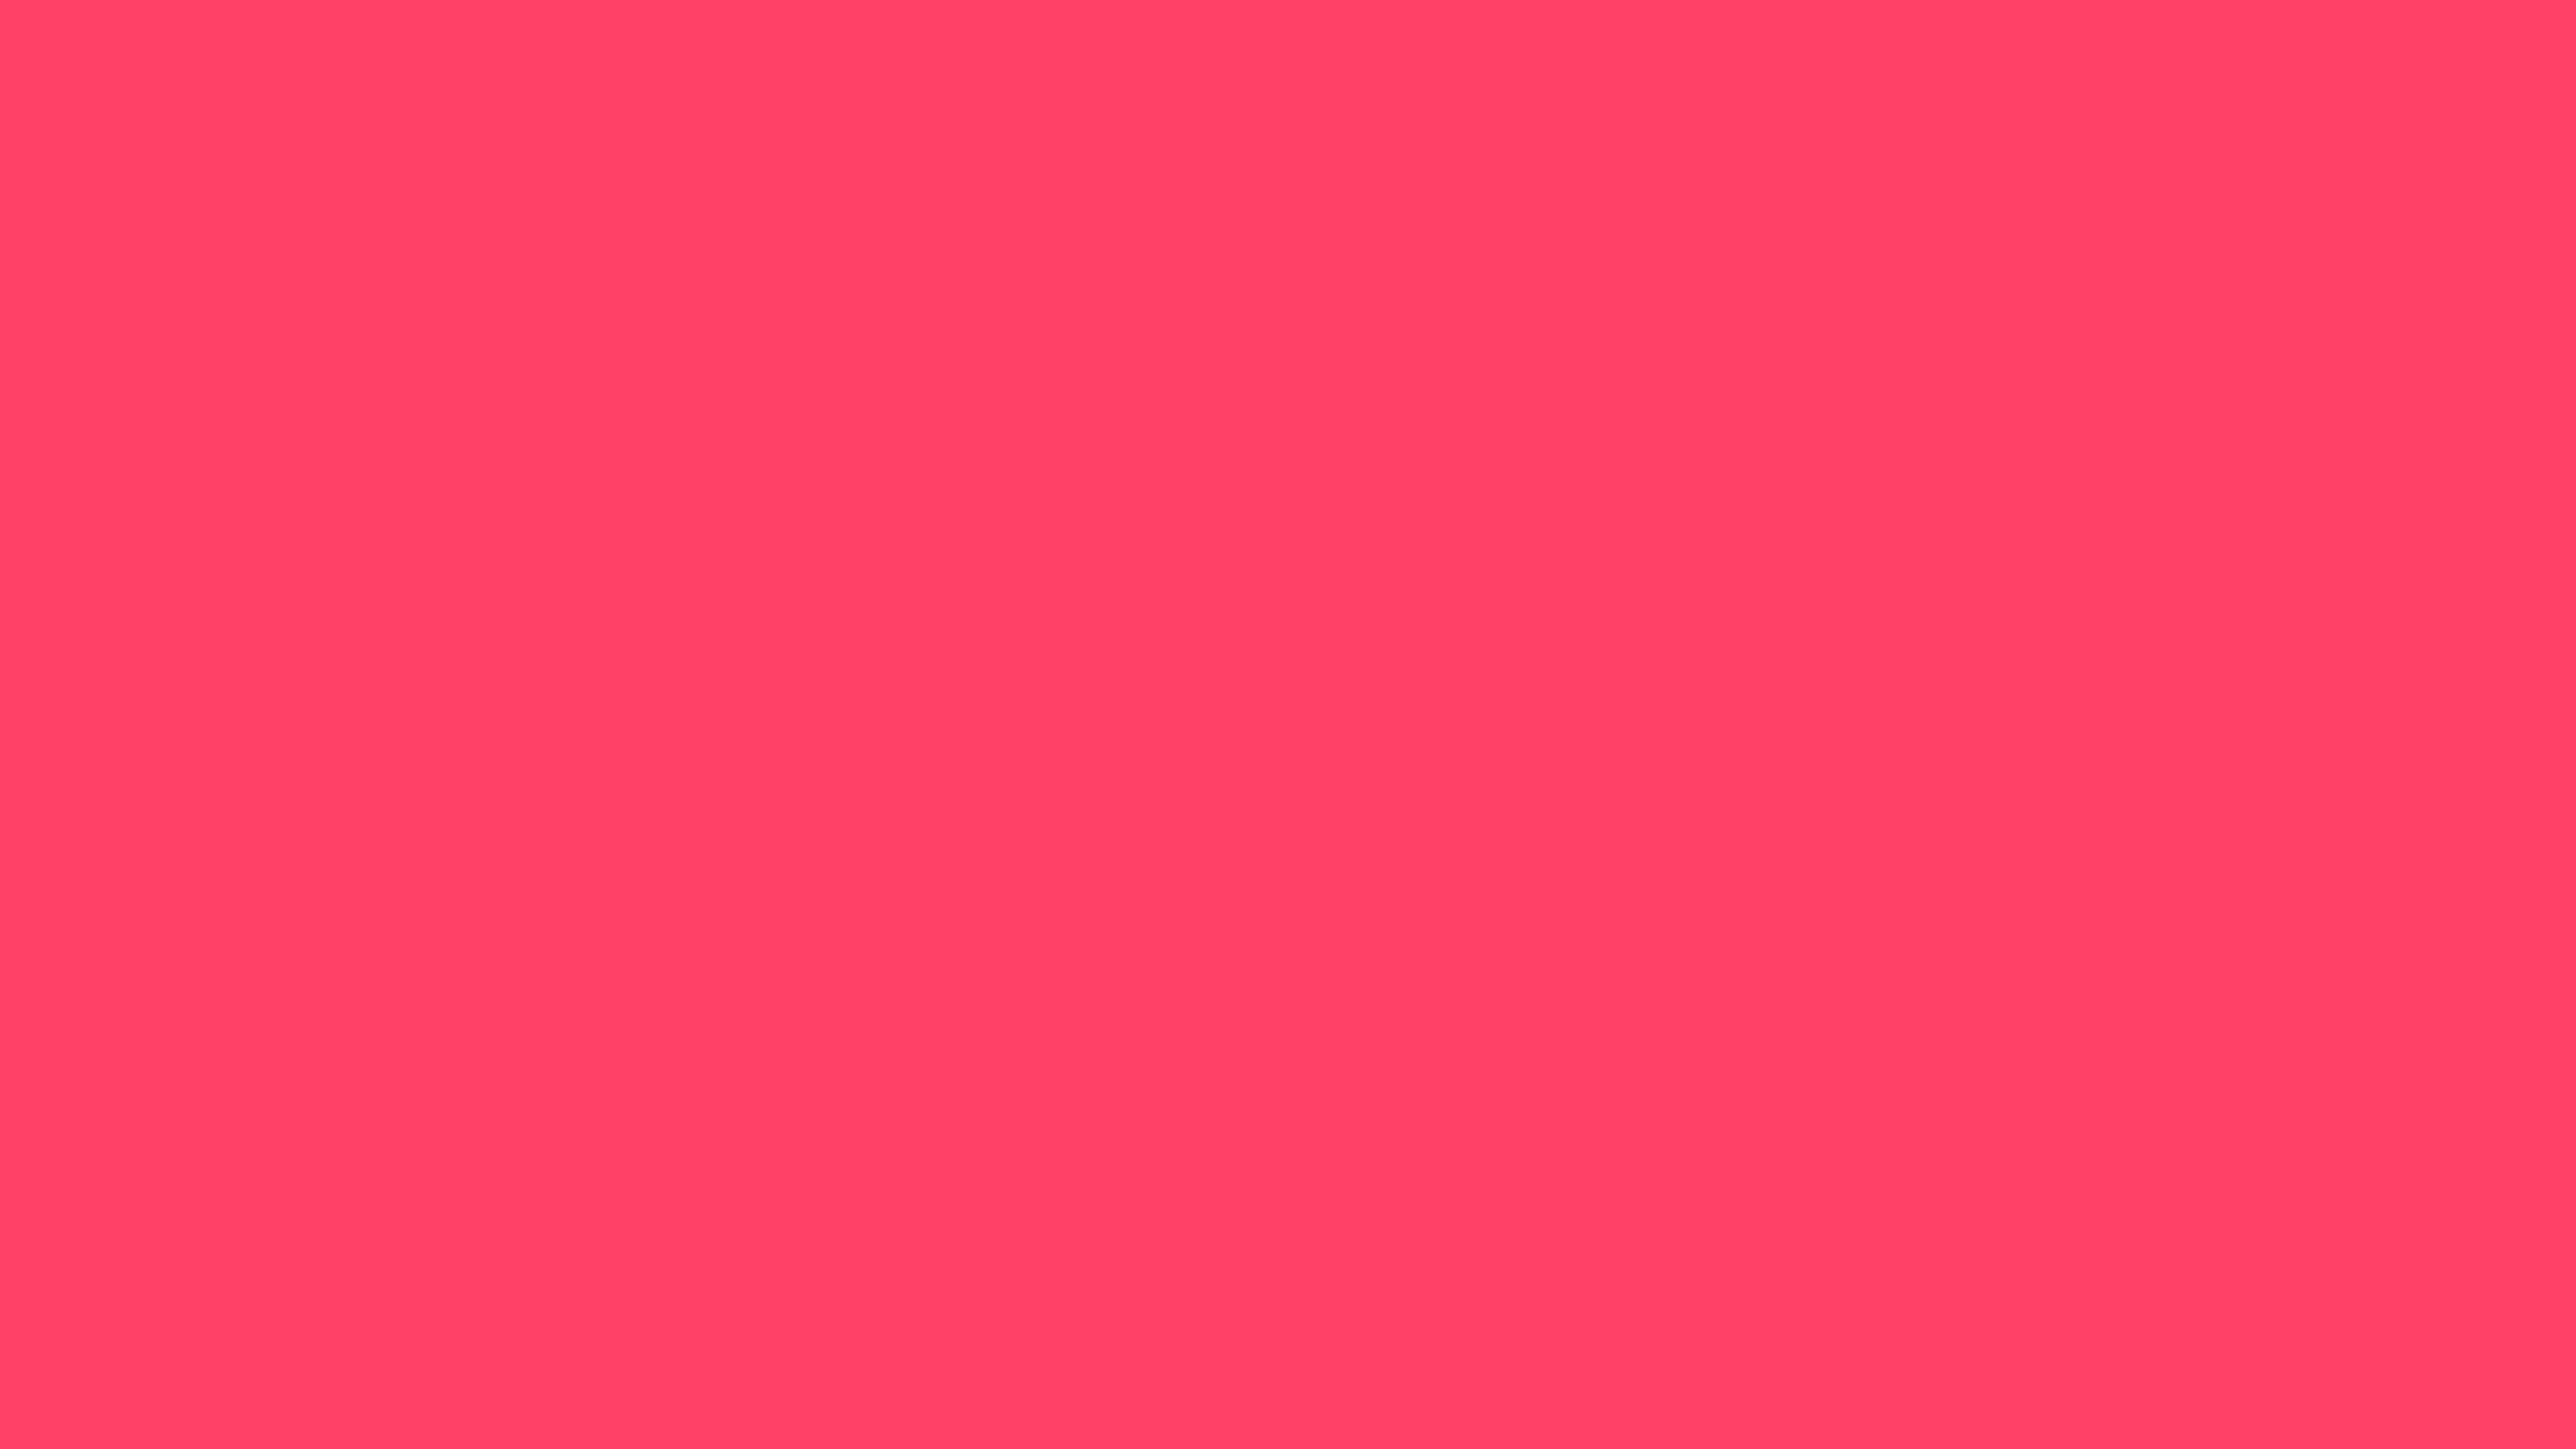 7680x4320 Neon Fuchsia Solid Color Background